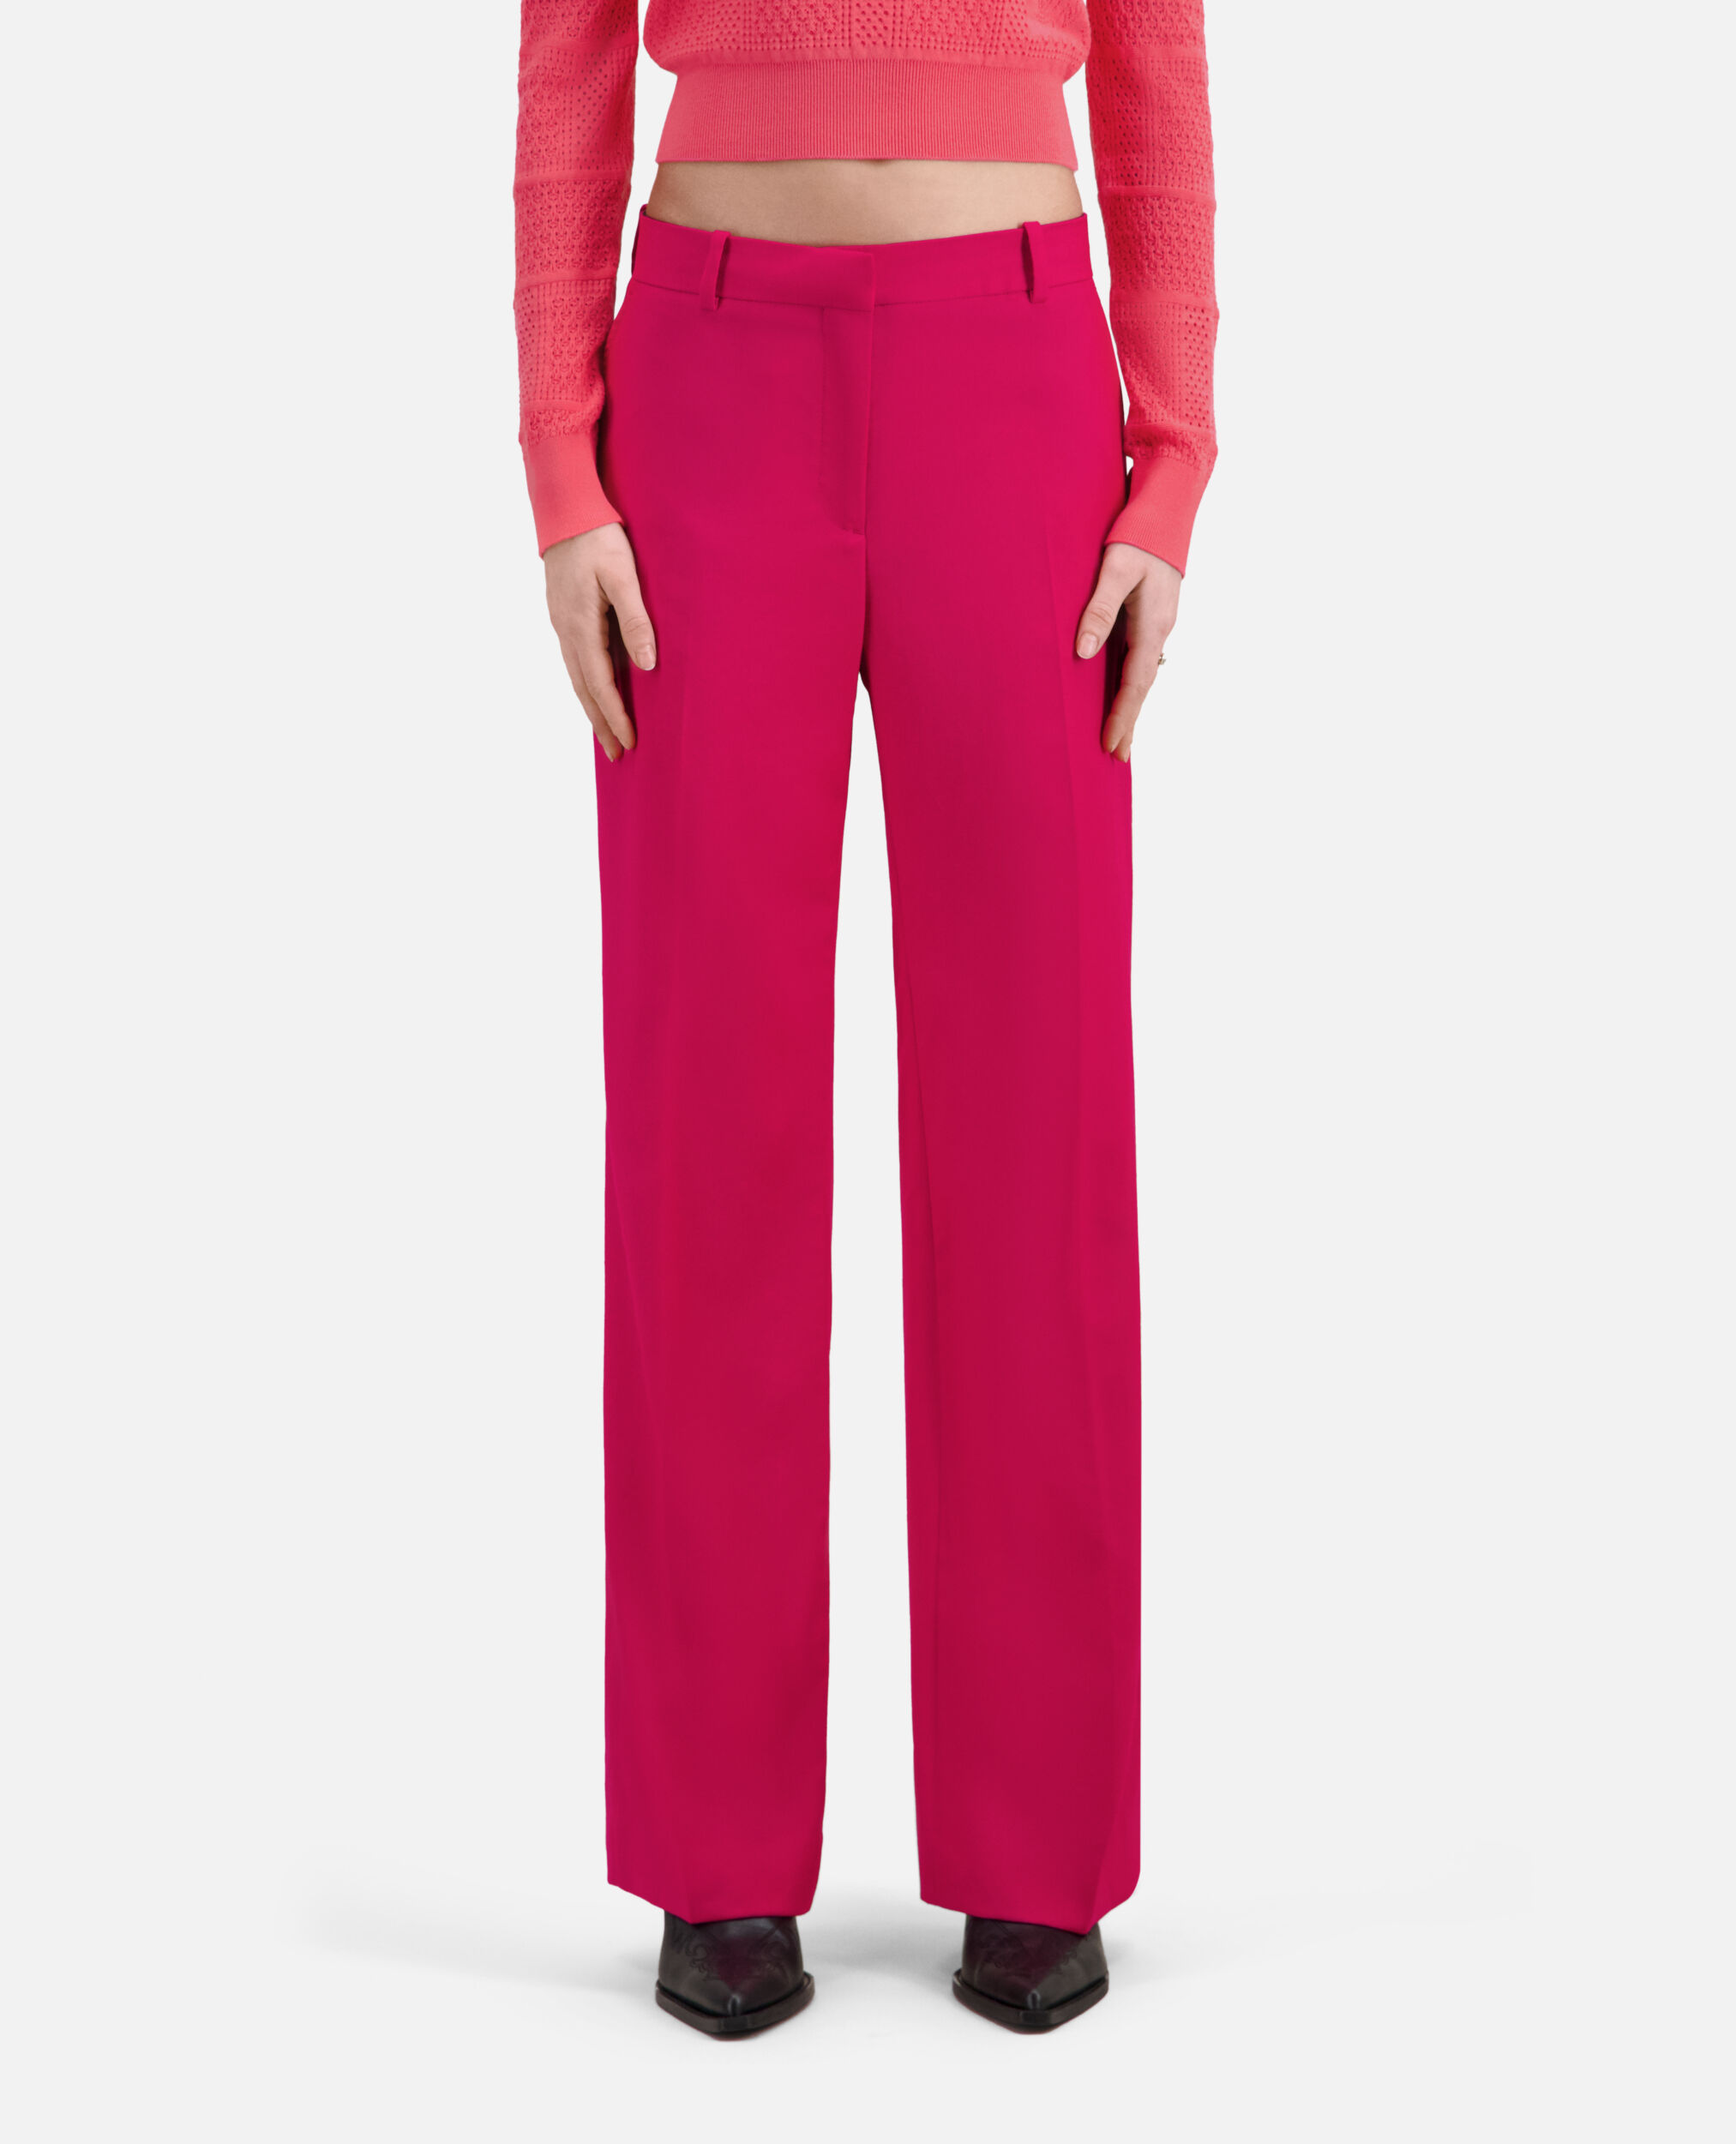 Pantalon tailleur rouge en laine, CHERRY, hi-res image number null